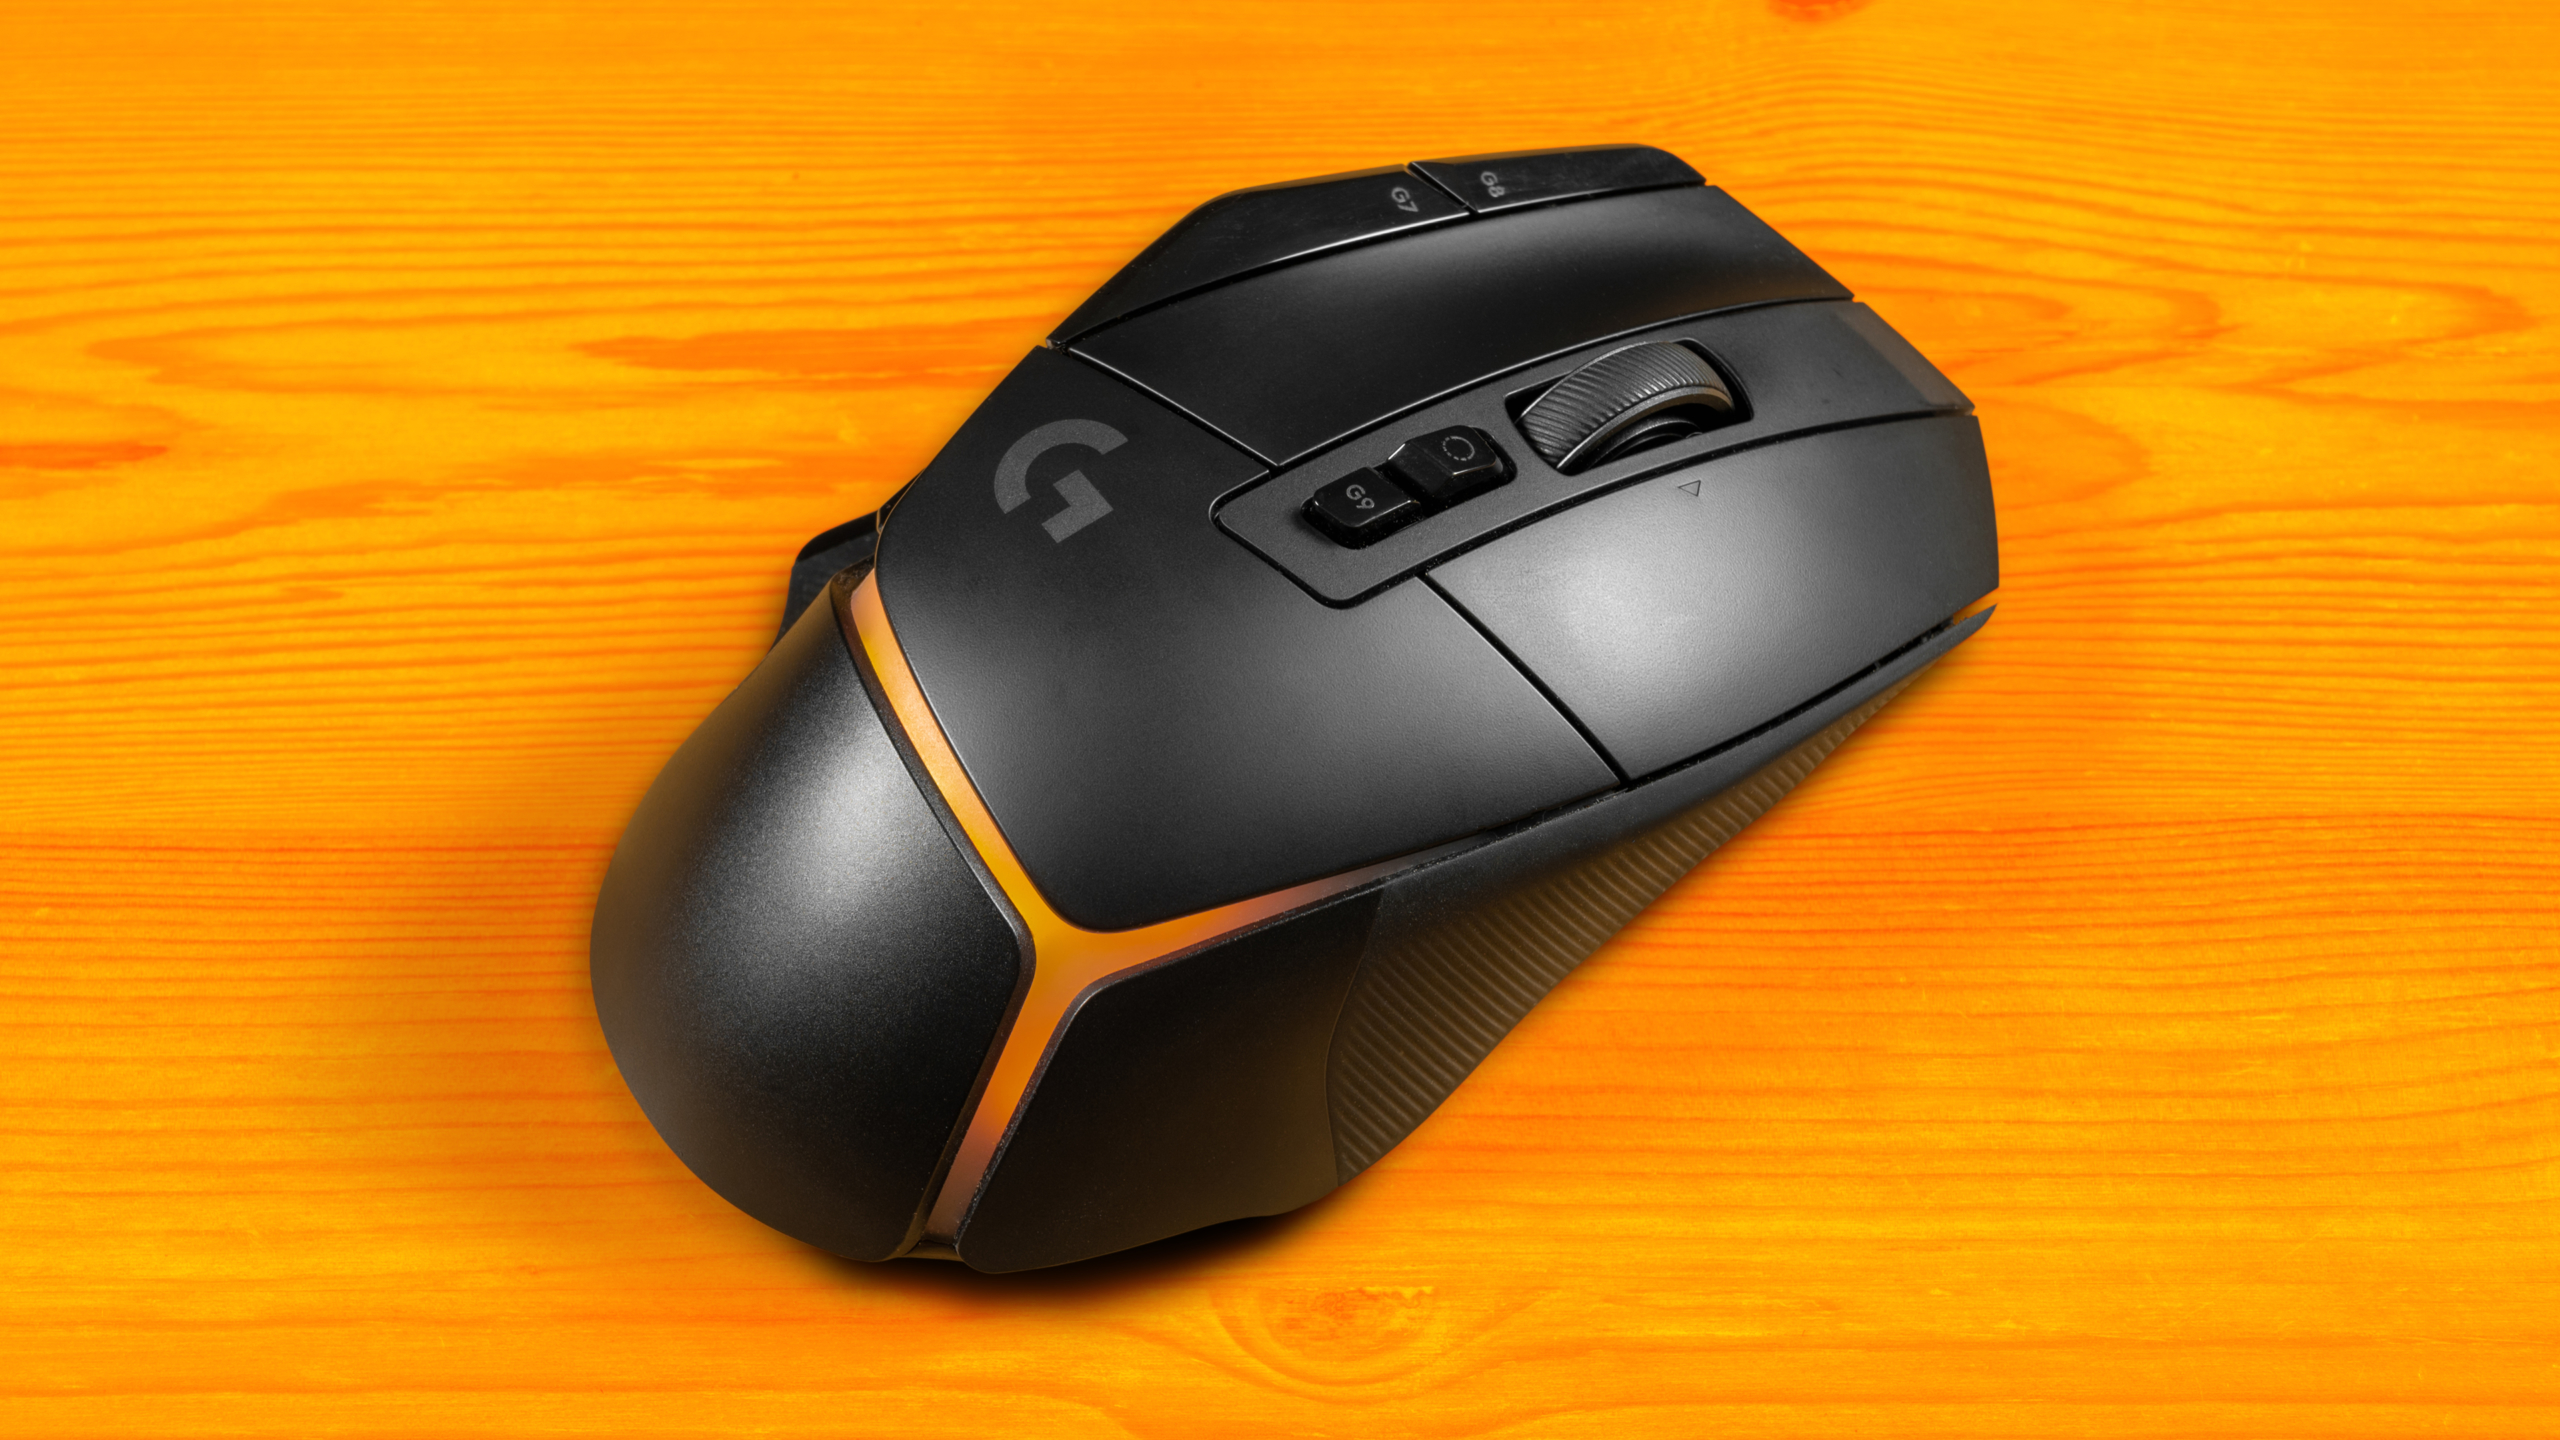 Bovenaanzicht van een Logitech G502 X Plus-muis, met de RGB-verlichting ingesteld op een oranje kleurenverloop.